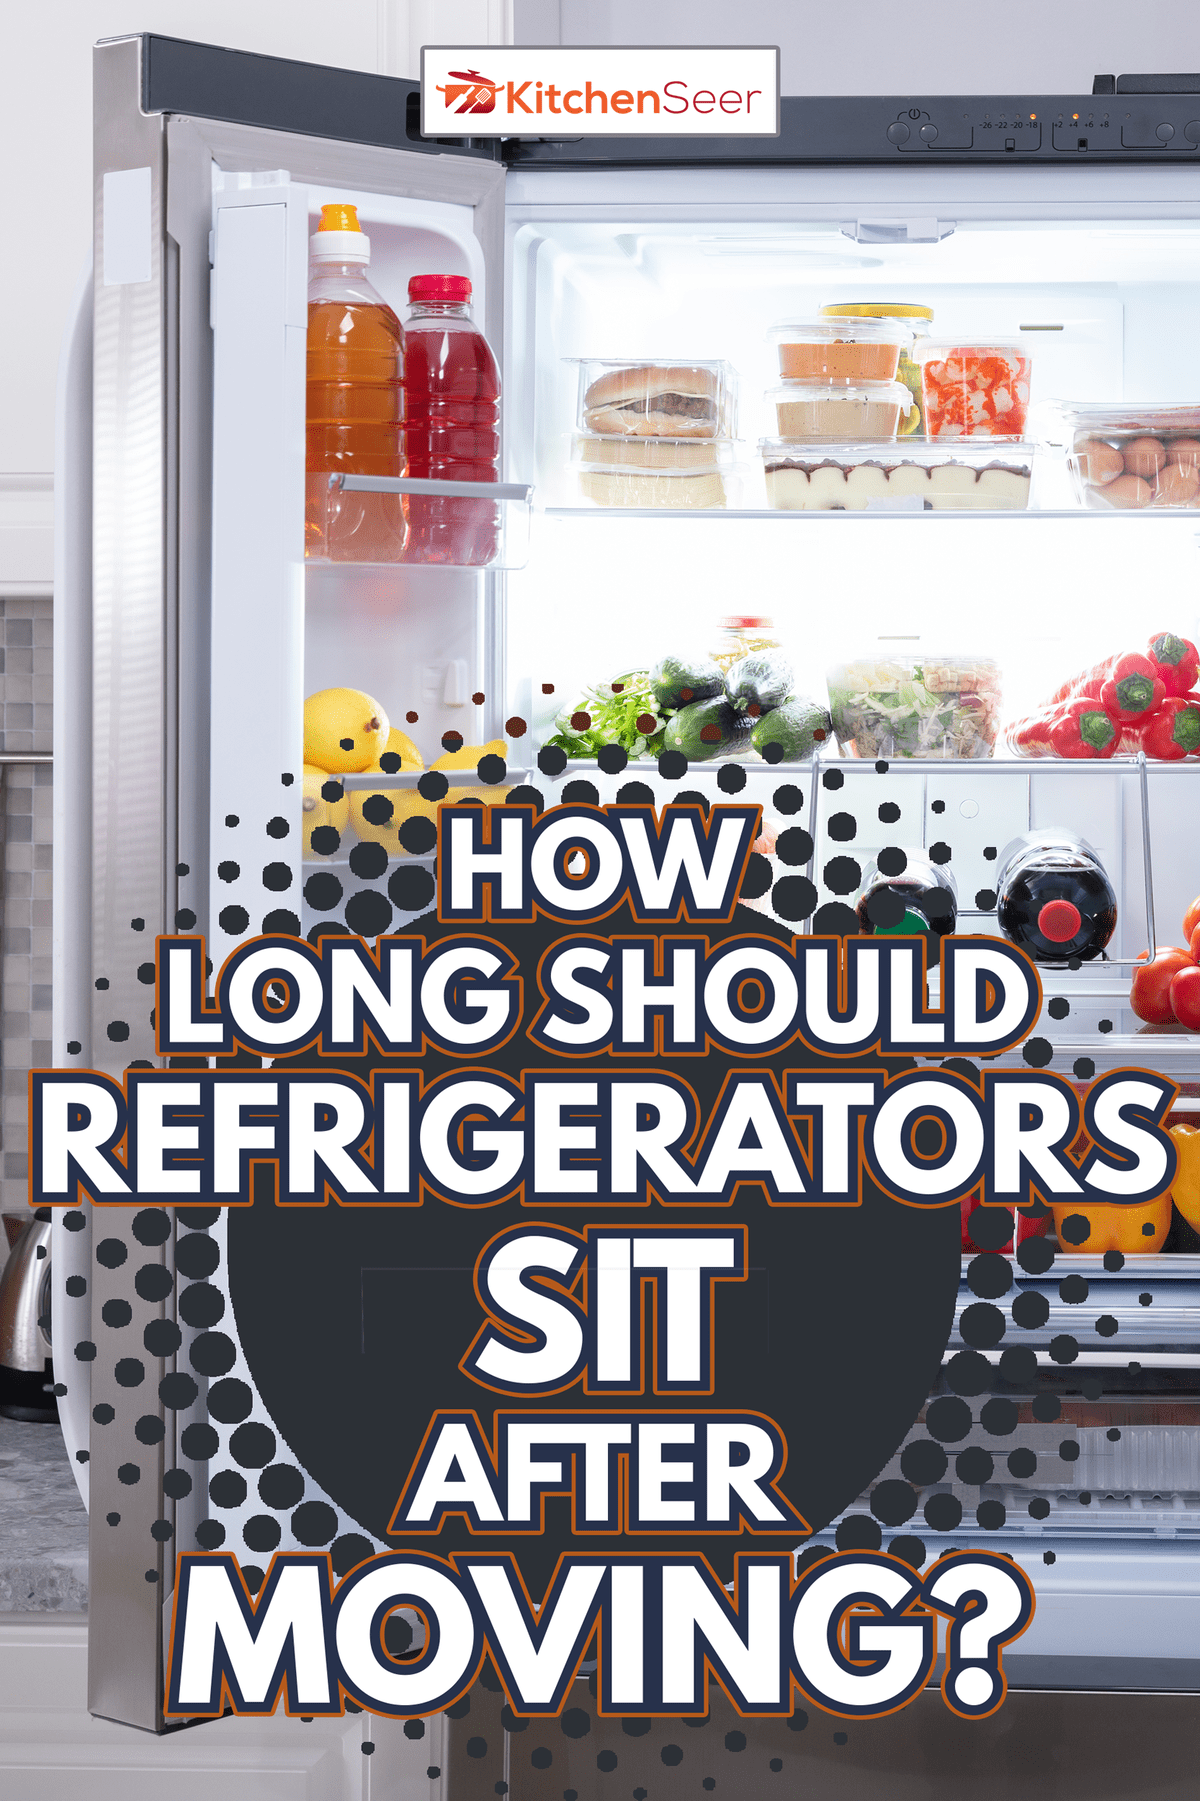 装满新鲜水果和蔬菜的开放式冰箱——冰箱在移动后应该放置多长时间